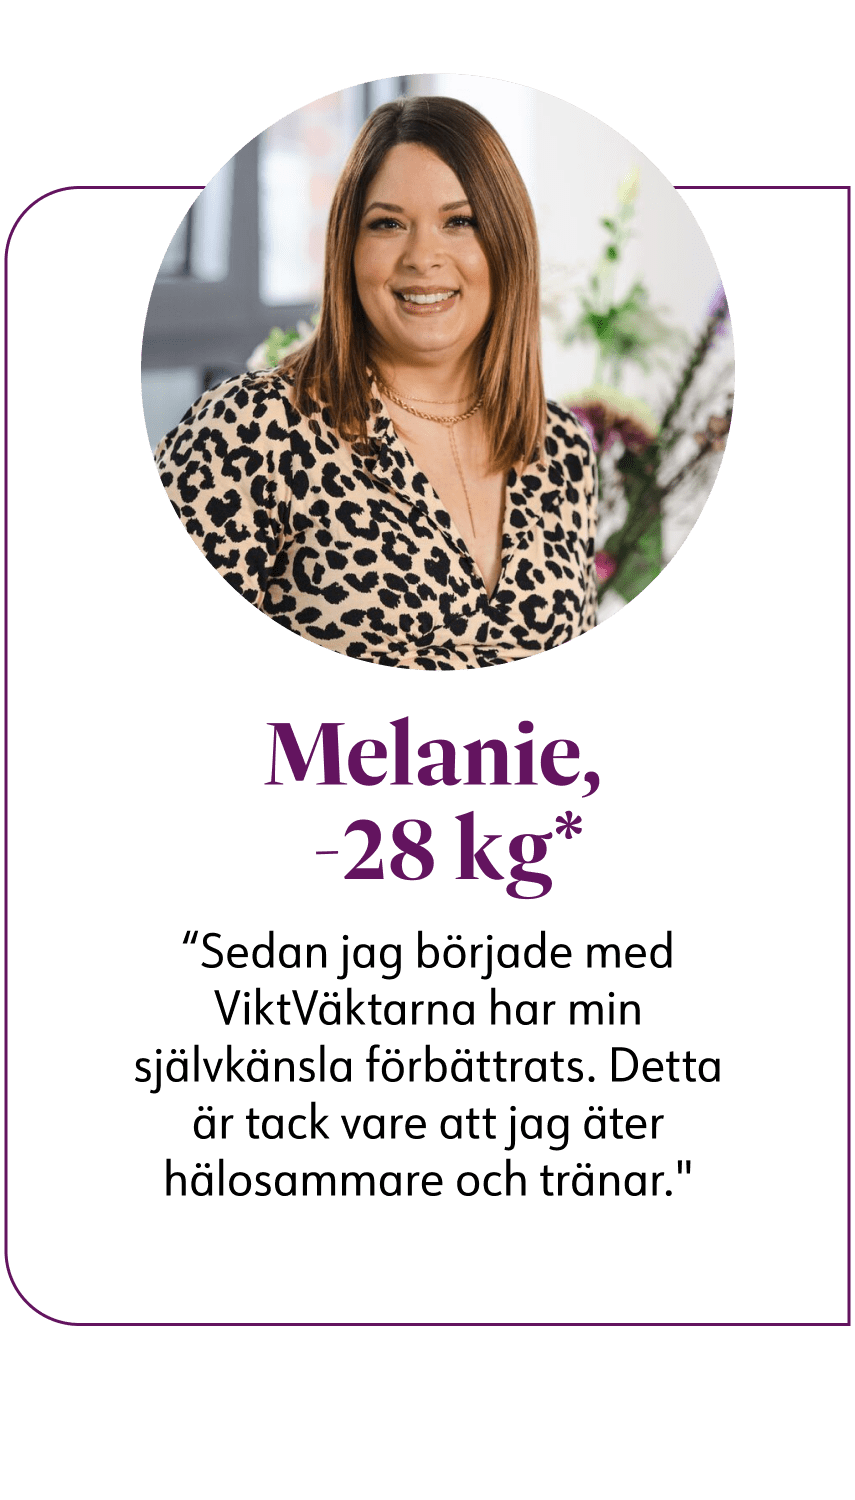 Melanie, WW-medlem som gått ner 28 kg